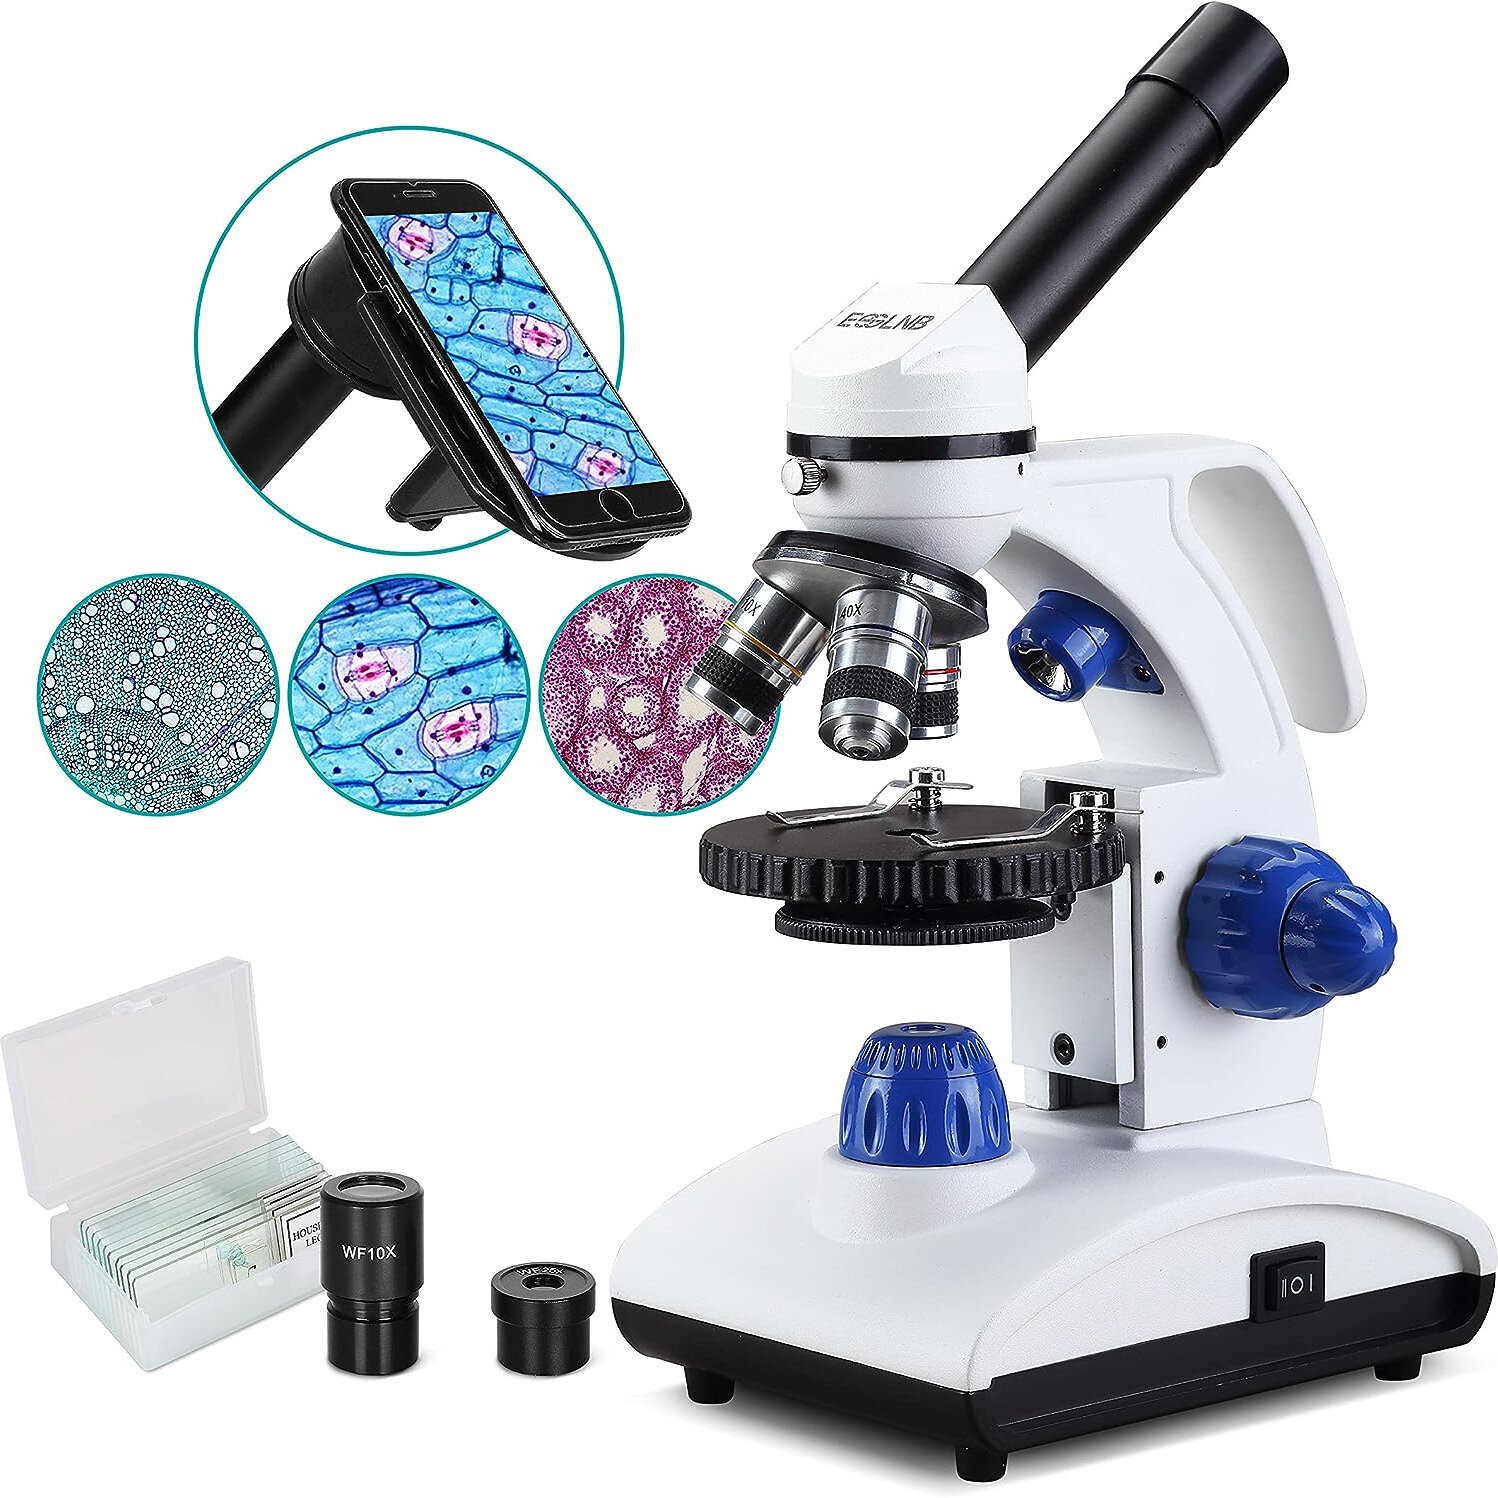 [EU Direct] Errore nella traduzione ES1045 Microscopio 1000X Microscopio studentesco per bambini Microscopio biologico a luce LED con lastre e adattatore per telefono Lenti in vetro ottico in metallo.